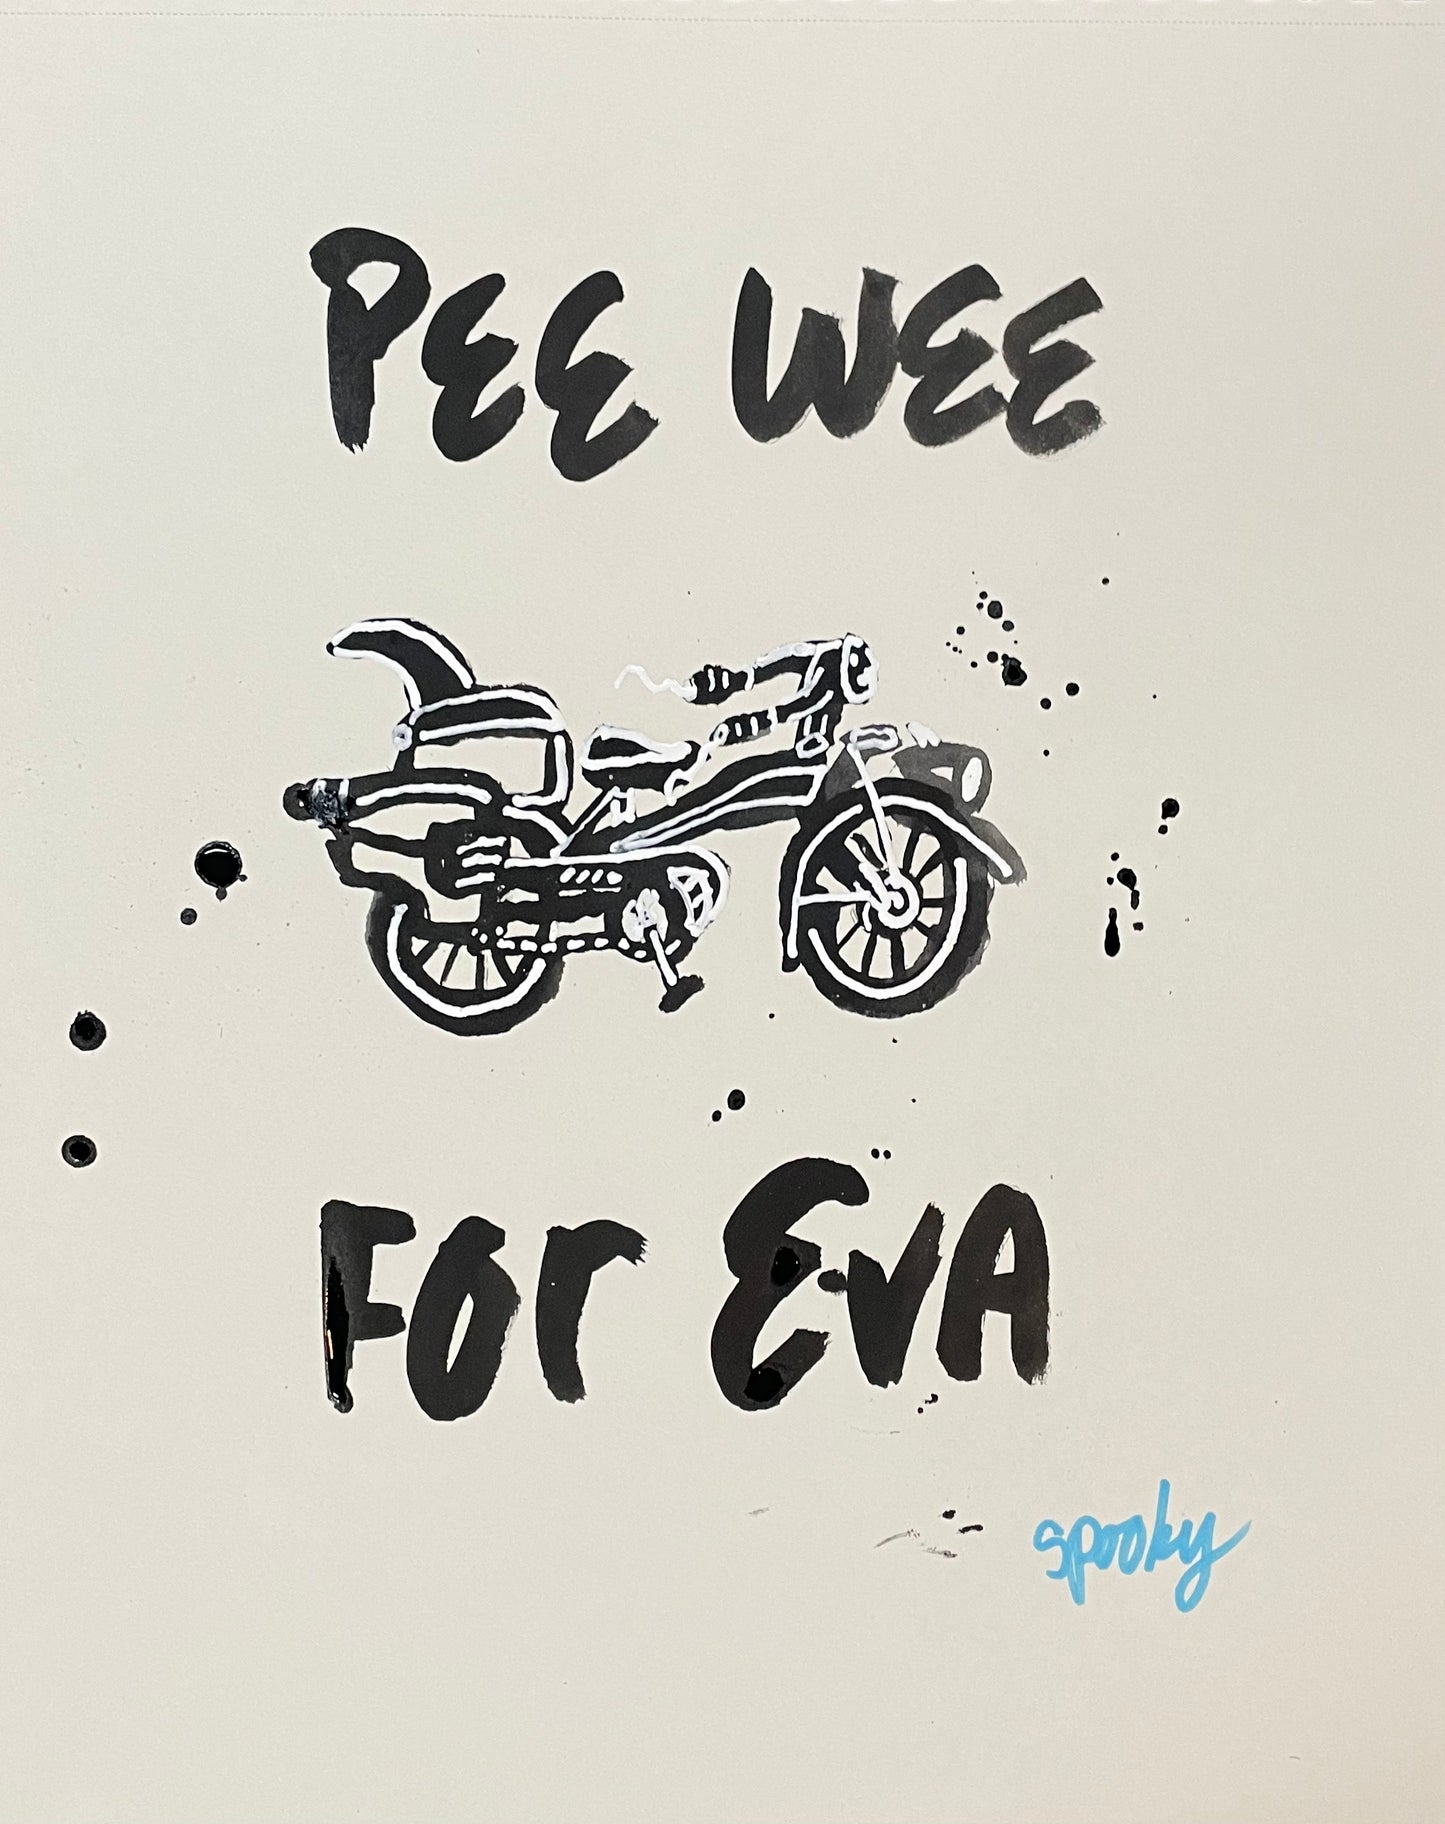 Pee Wee 4eva